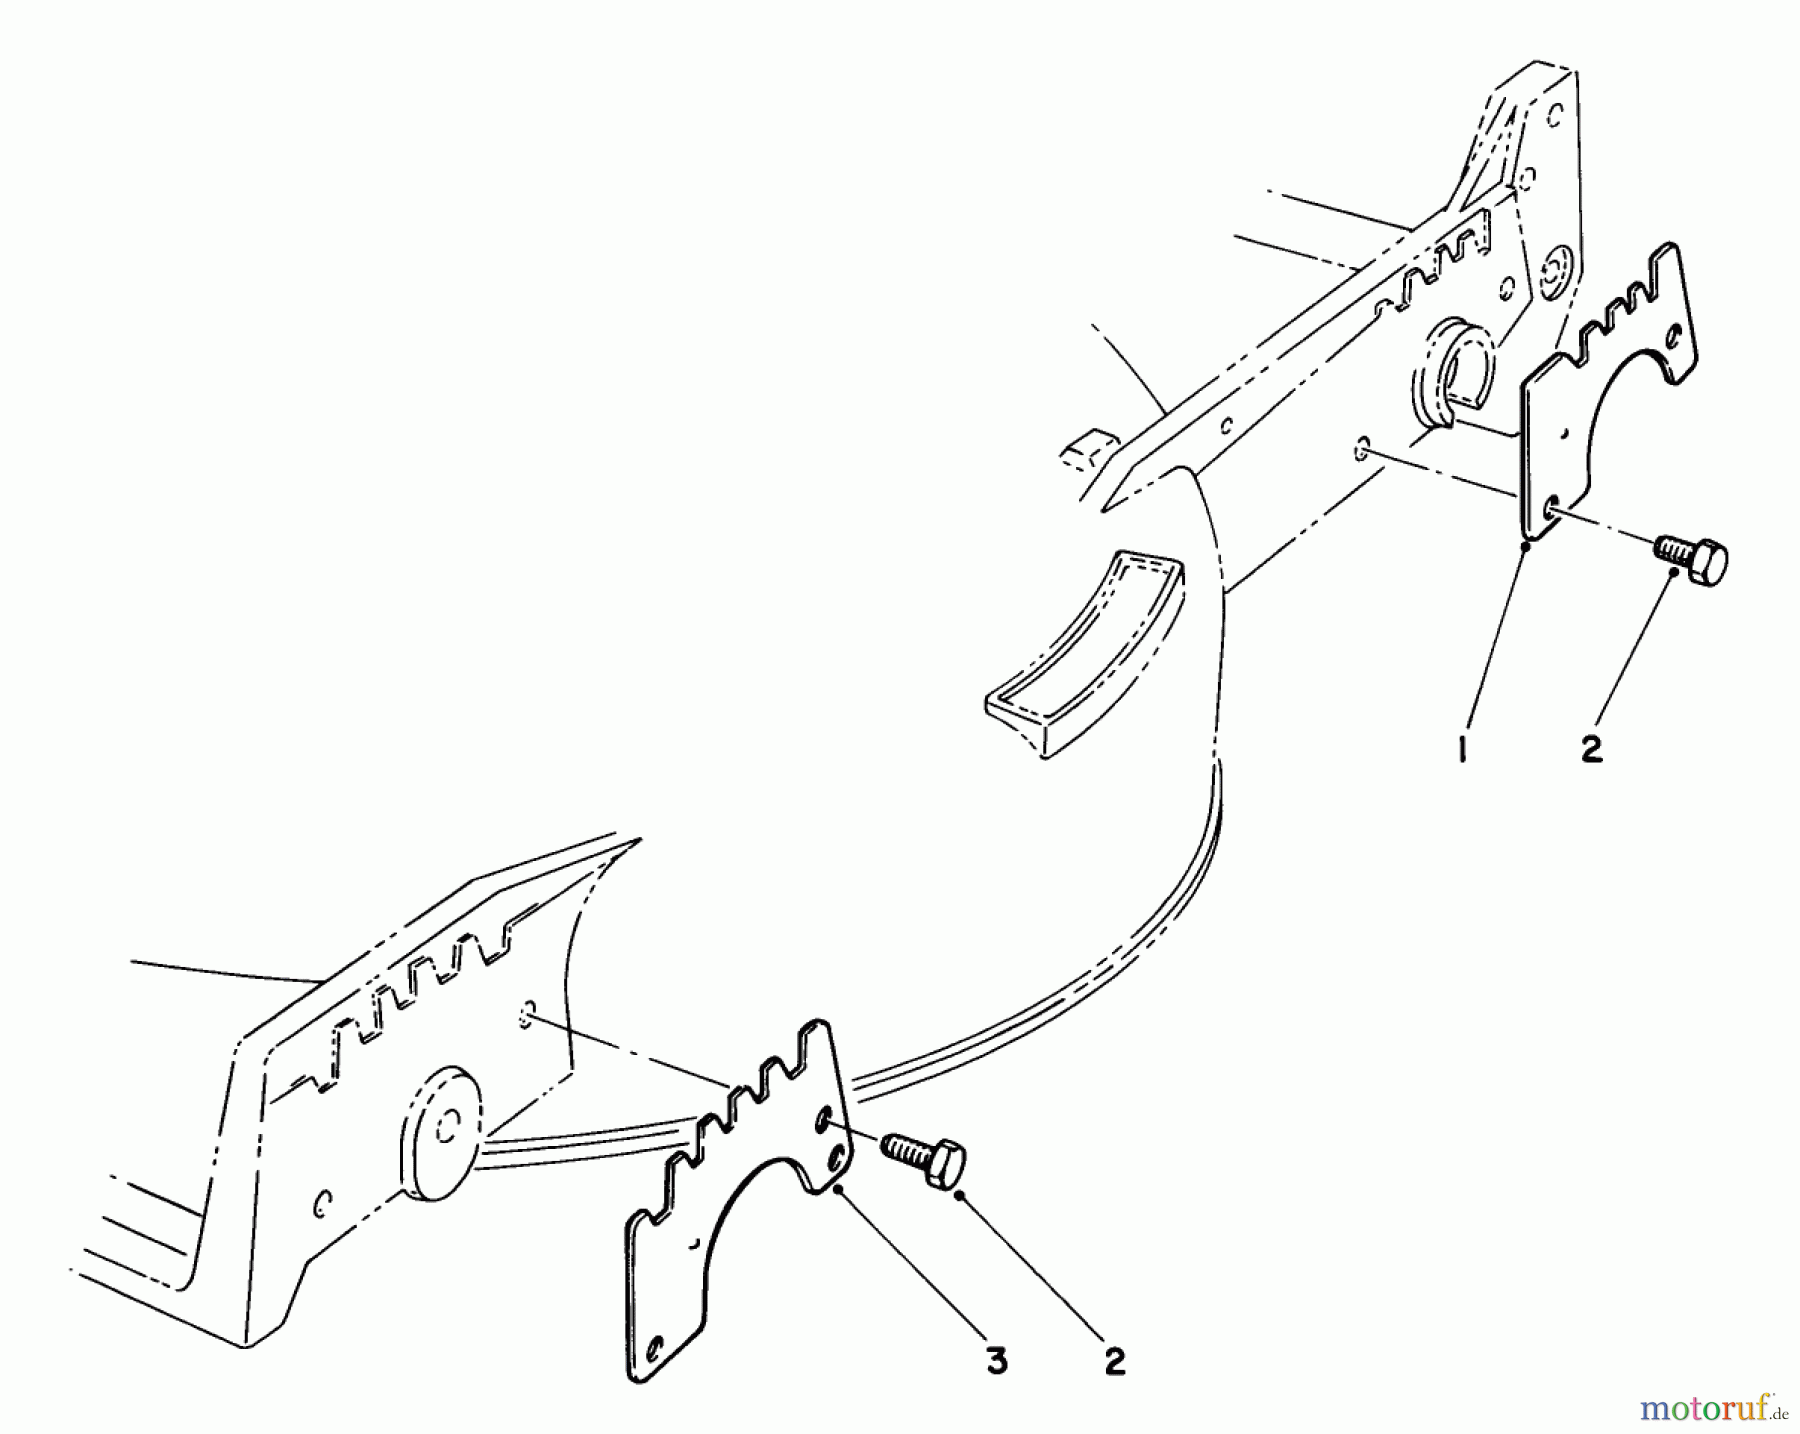  Toro Neu Mowers, Walk-Behind Seite 1 20747C - Toro Lawnmower, 1986 (6000001-6999999) WEAR PLATE KIT NO. 49-4080 (OPTIONAL)